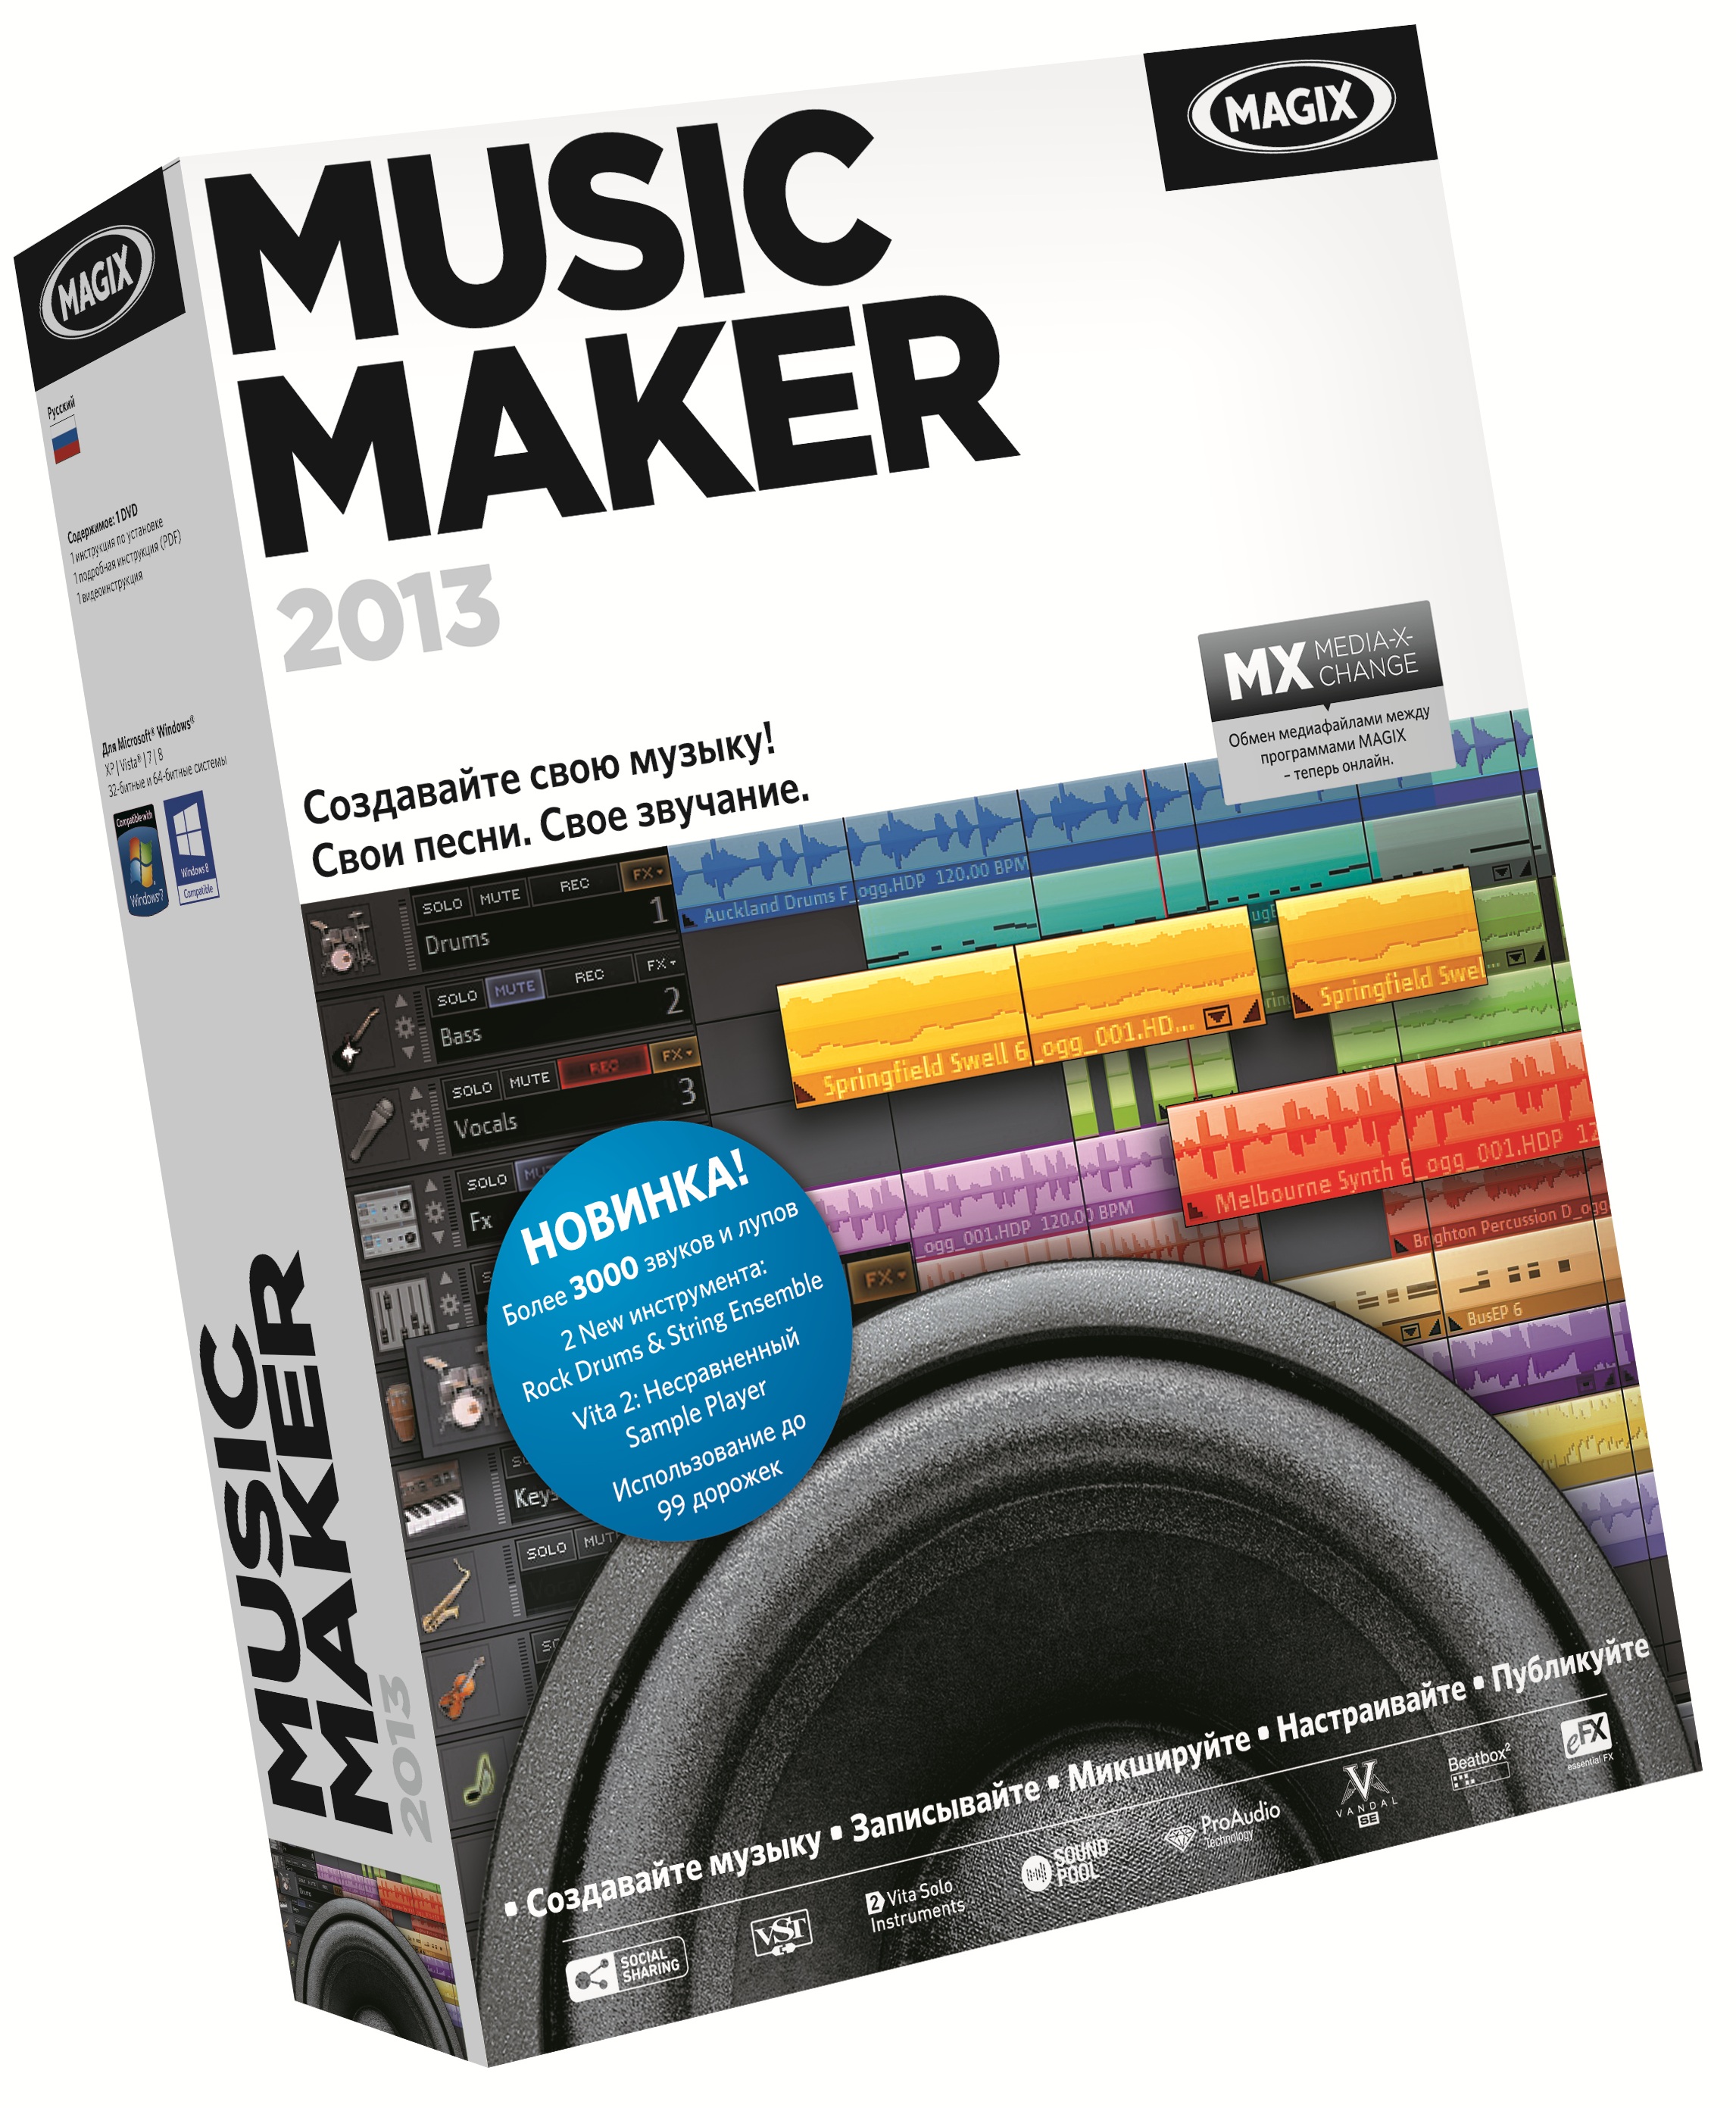 Программа MAGIX Music Maker 2013